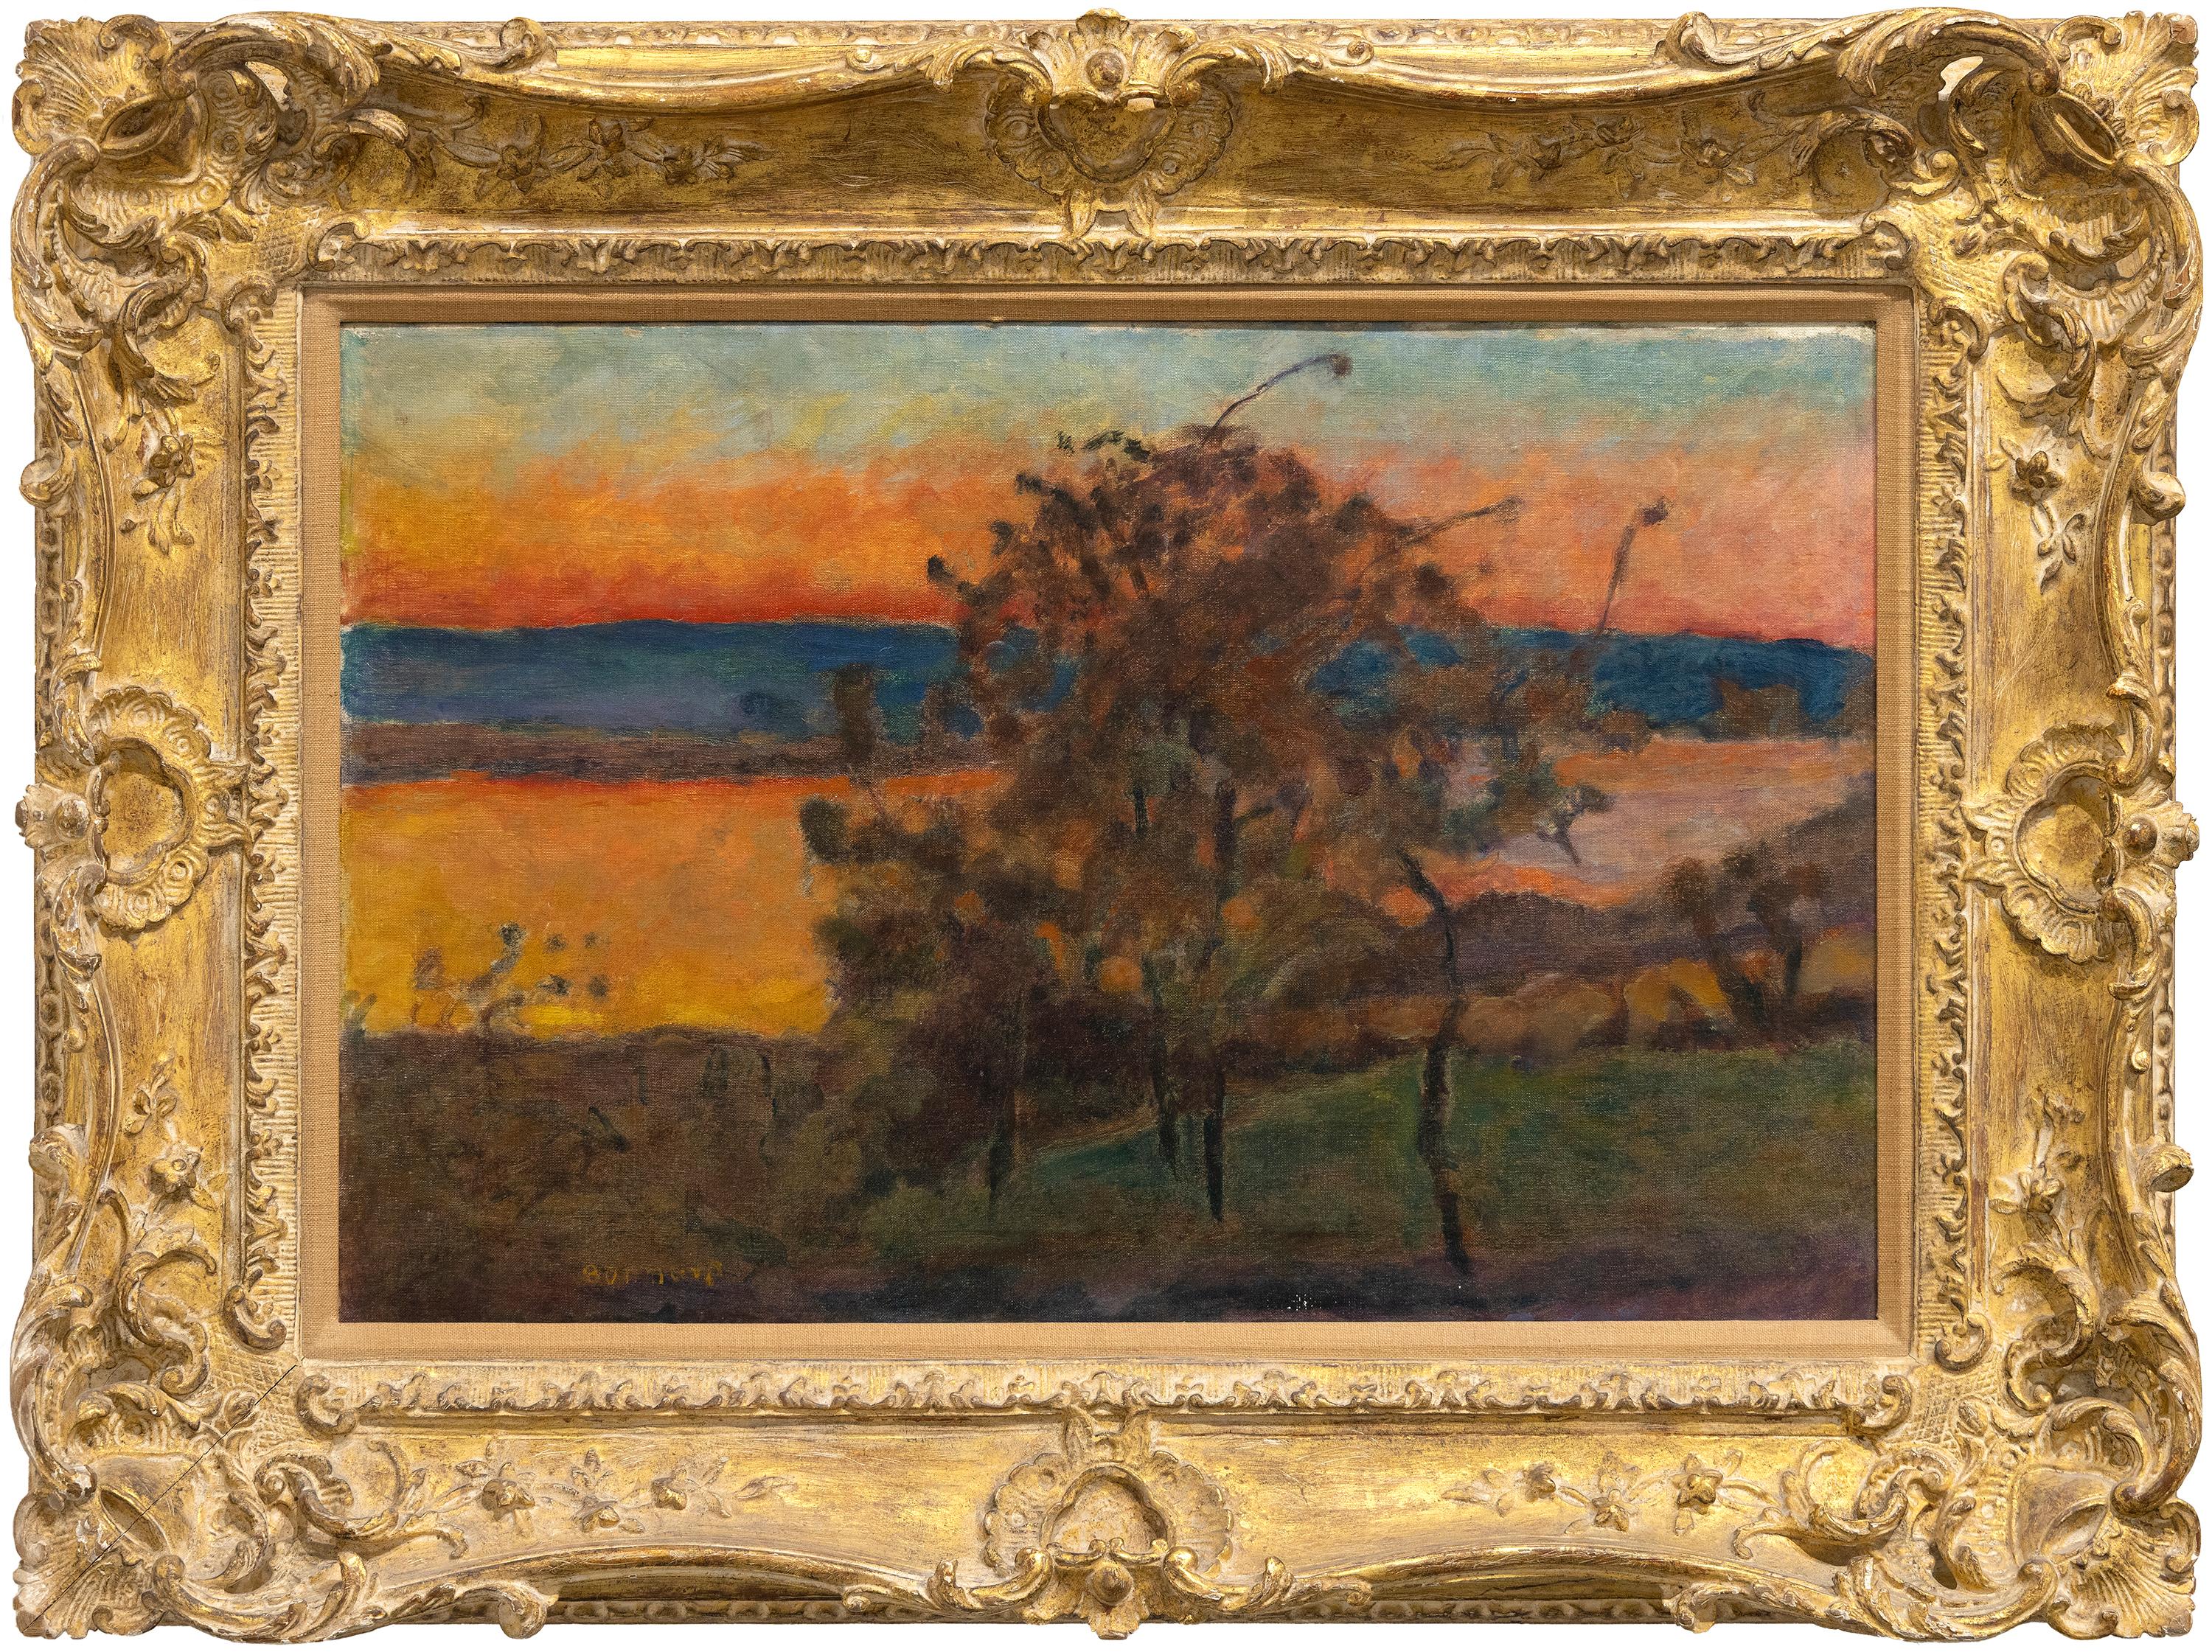 How did Pierre Bonnard paint?